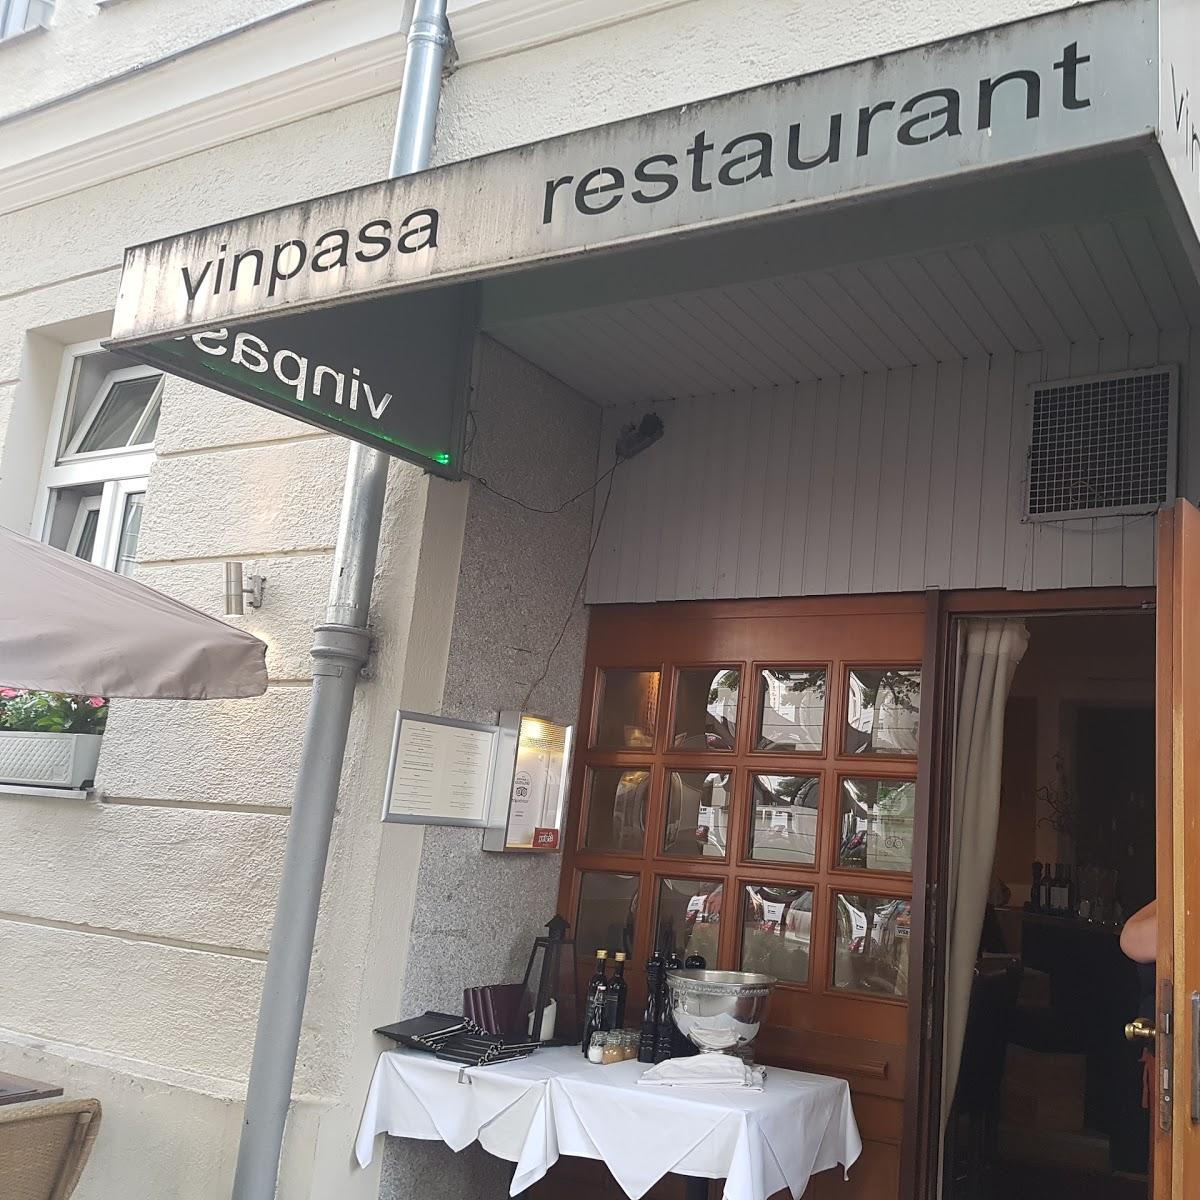 Restaurant "Vinpasa" in München